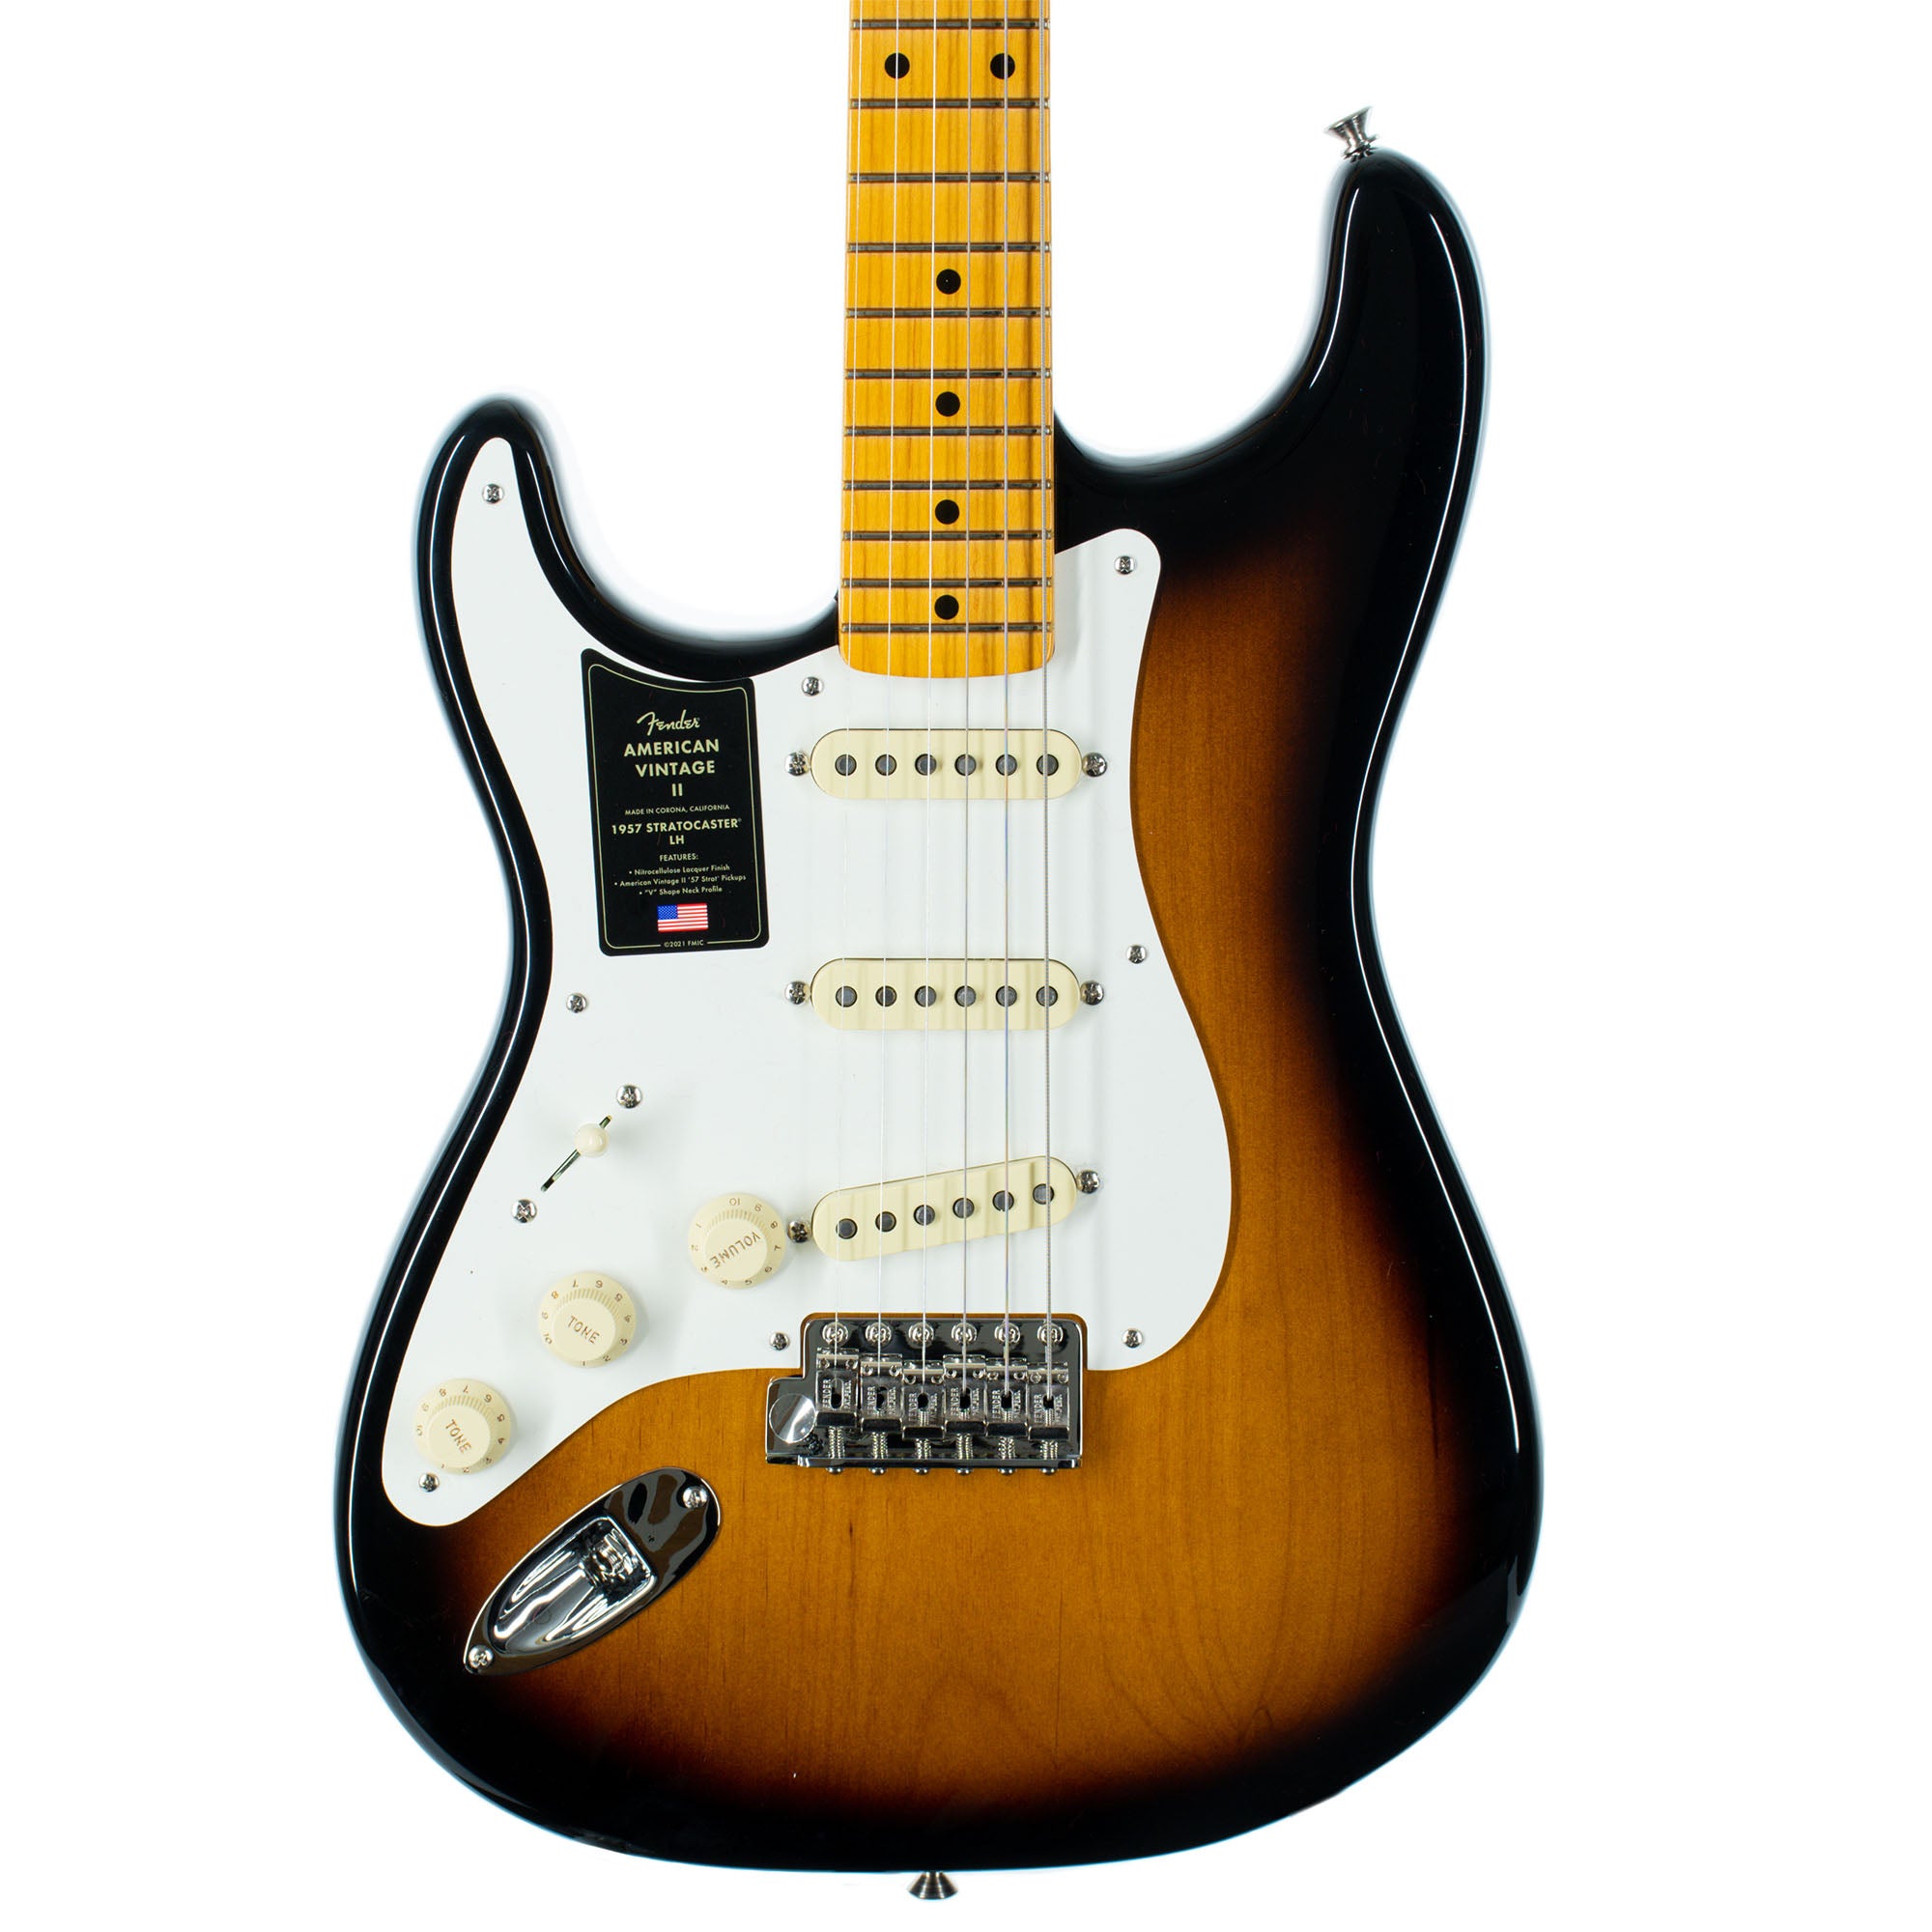 Fender American Vintage II 1957 Stratocaster Electric Guitar, Lefty, Maple,  2 Color Sunburst